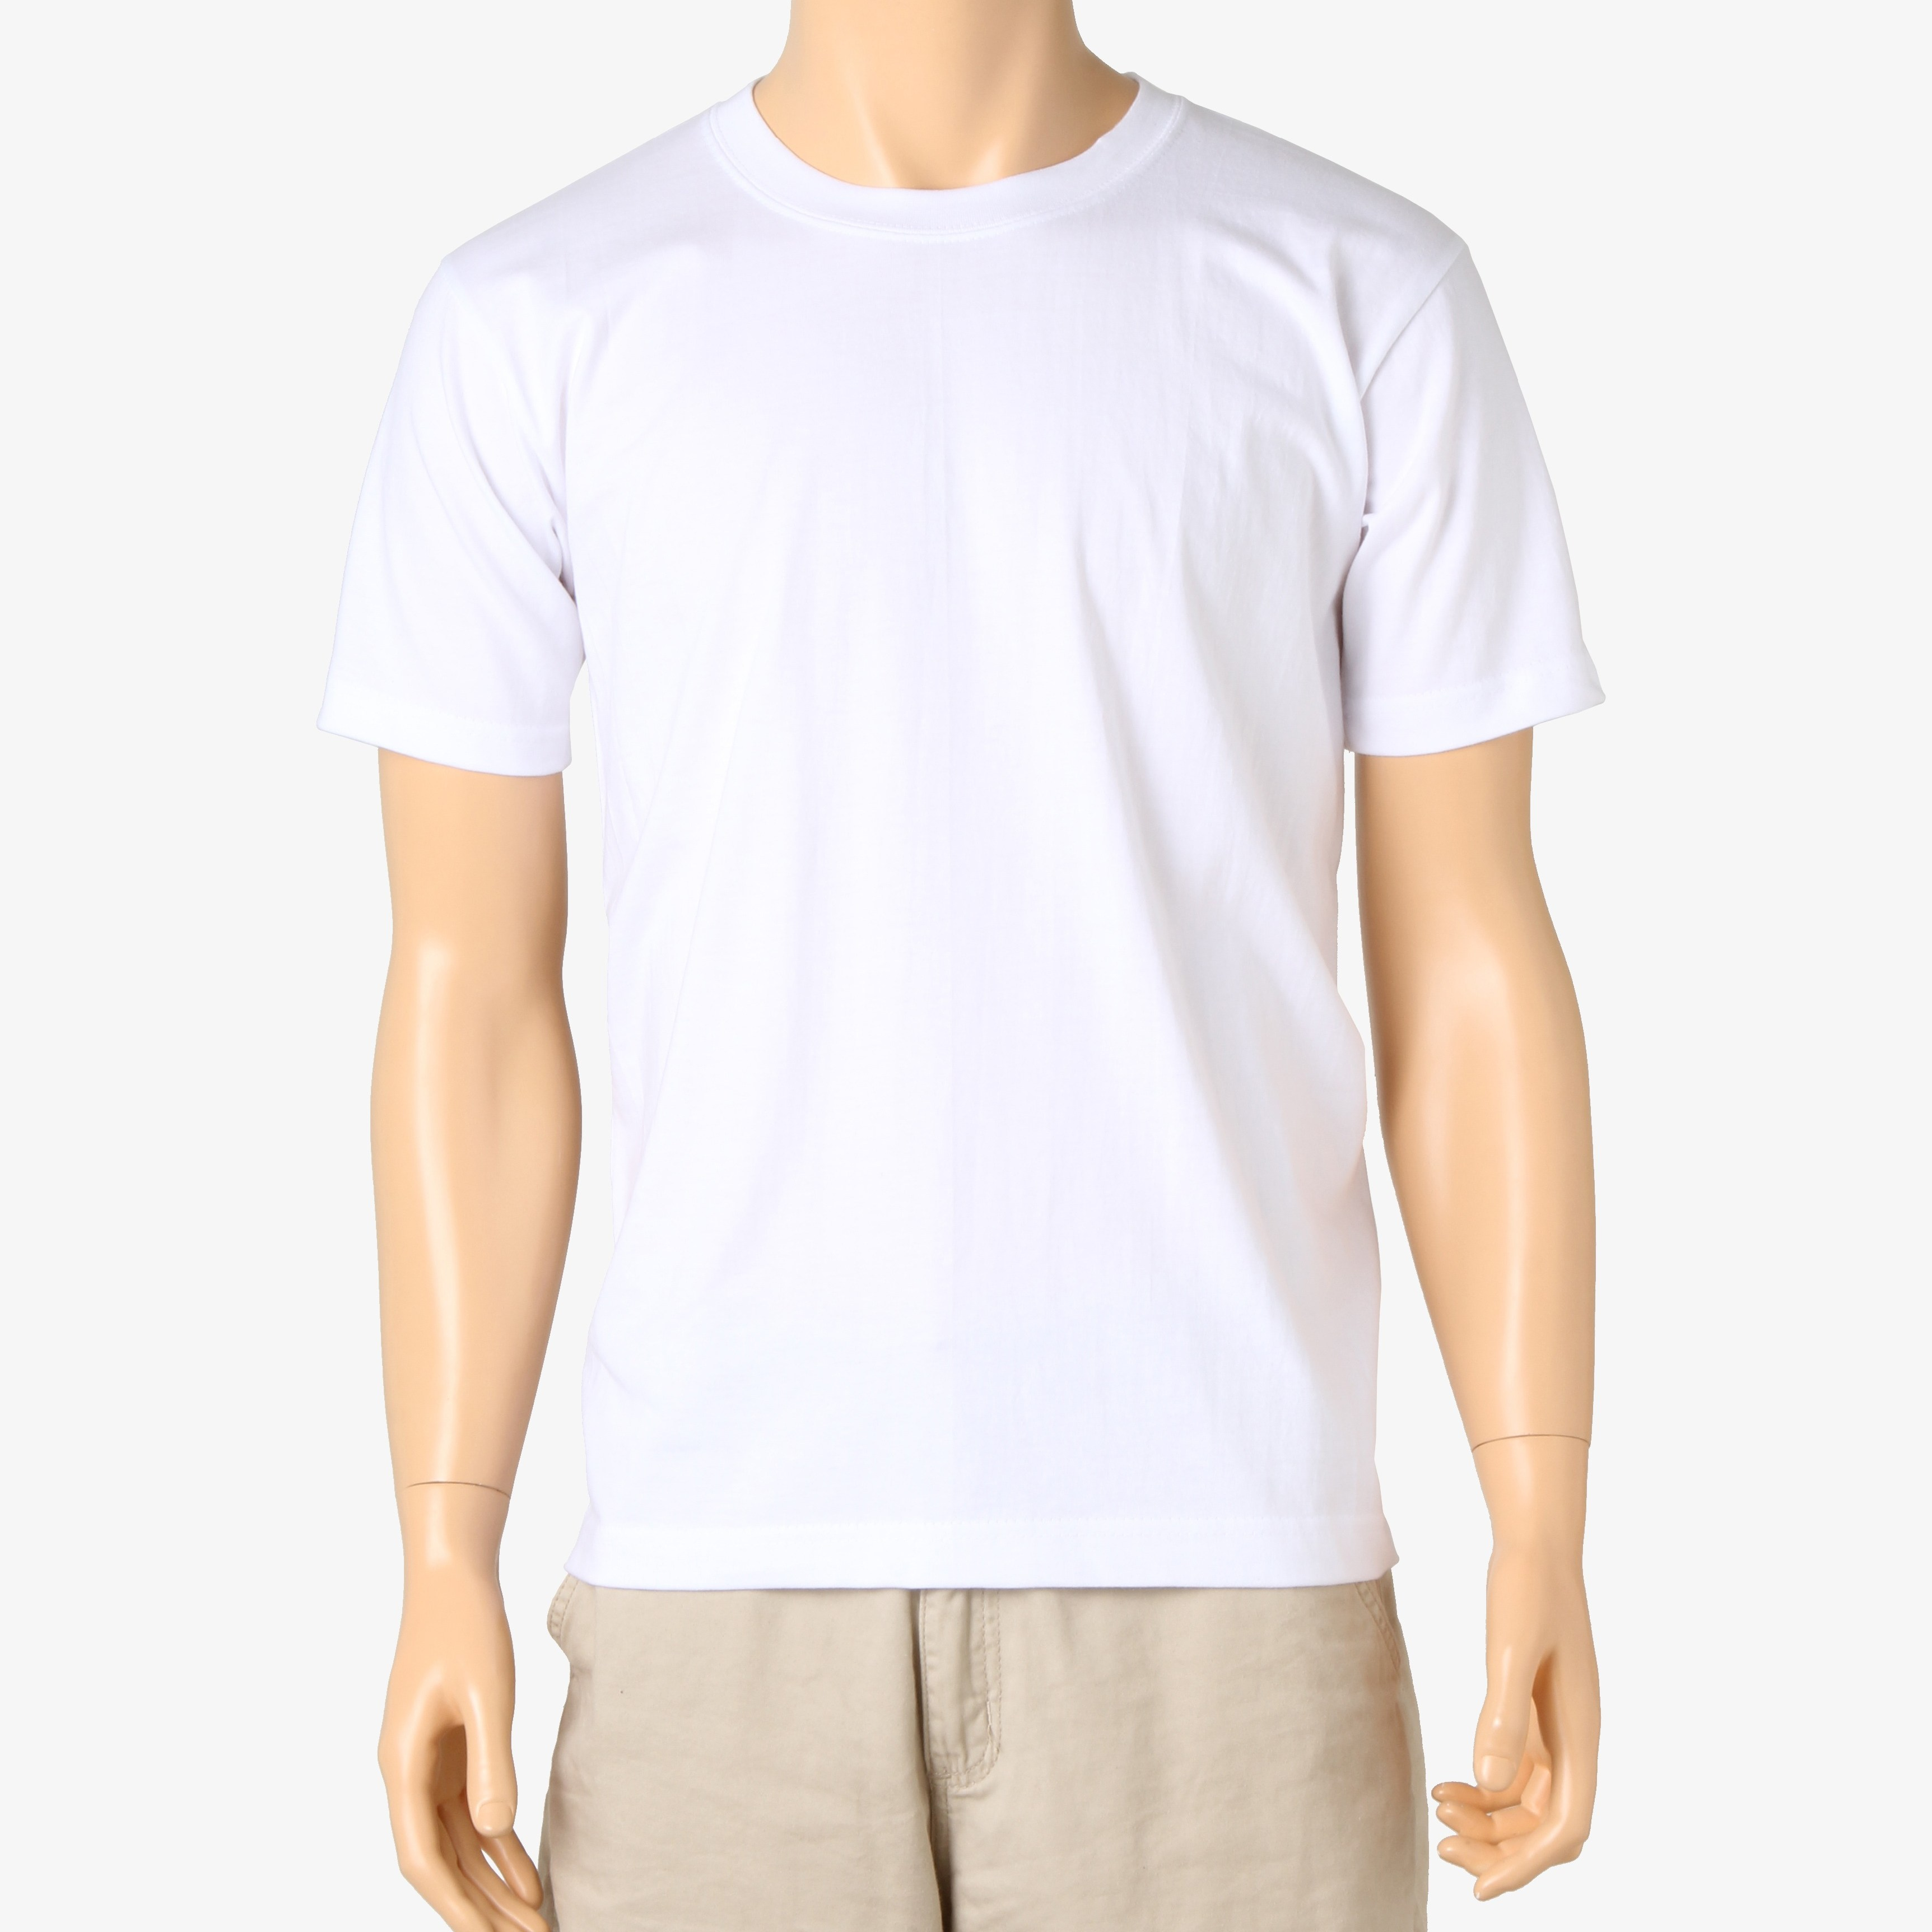 엘리시아 30수고급 반팔티 면티 단체티 반티 흰색 기본 무지티셔츠 남자면티 반팔 티셔츠